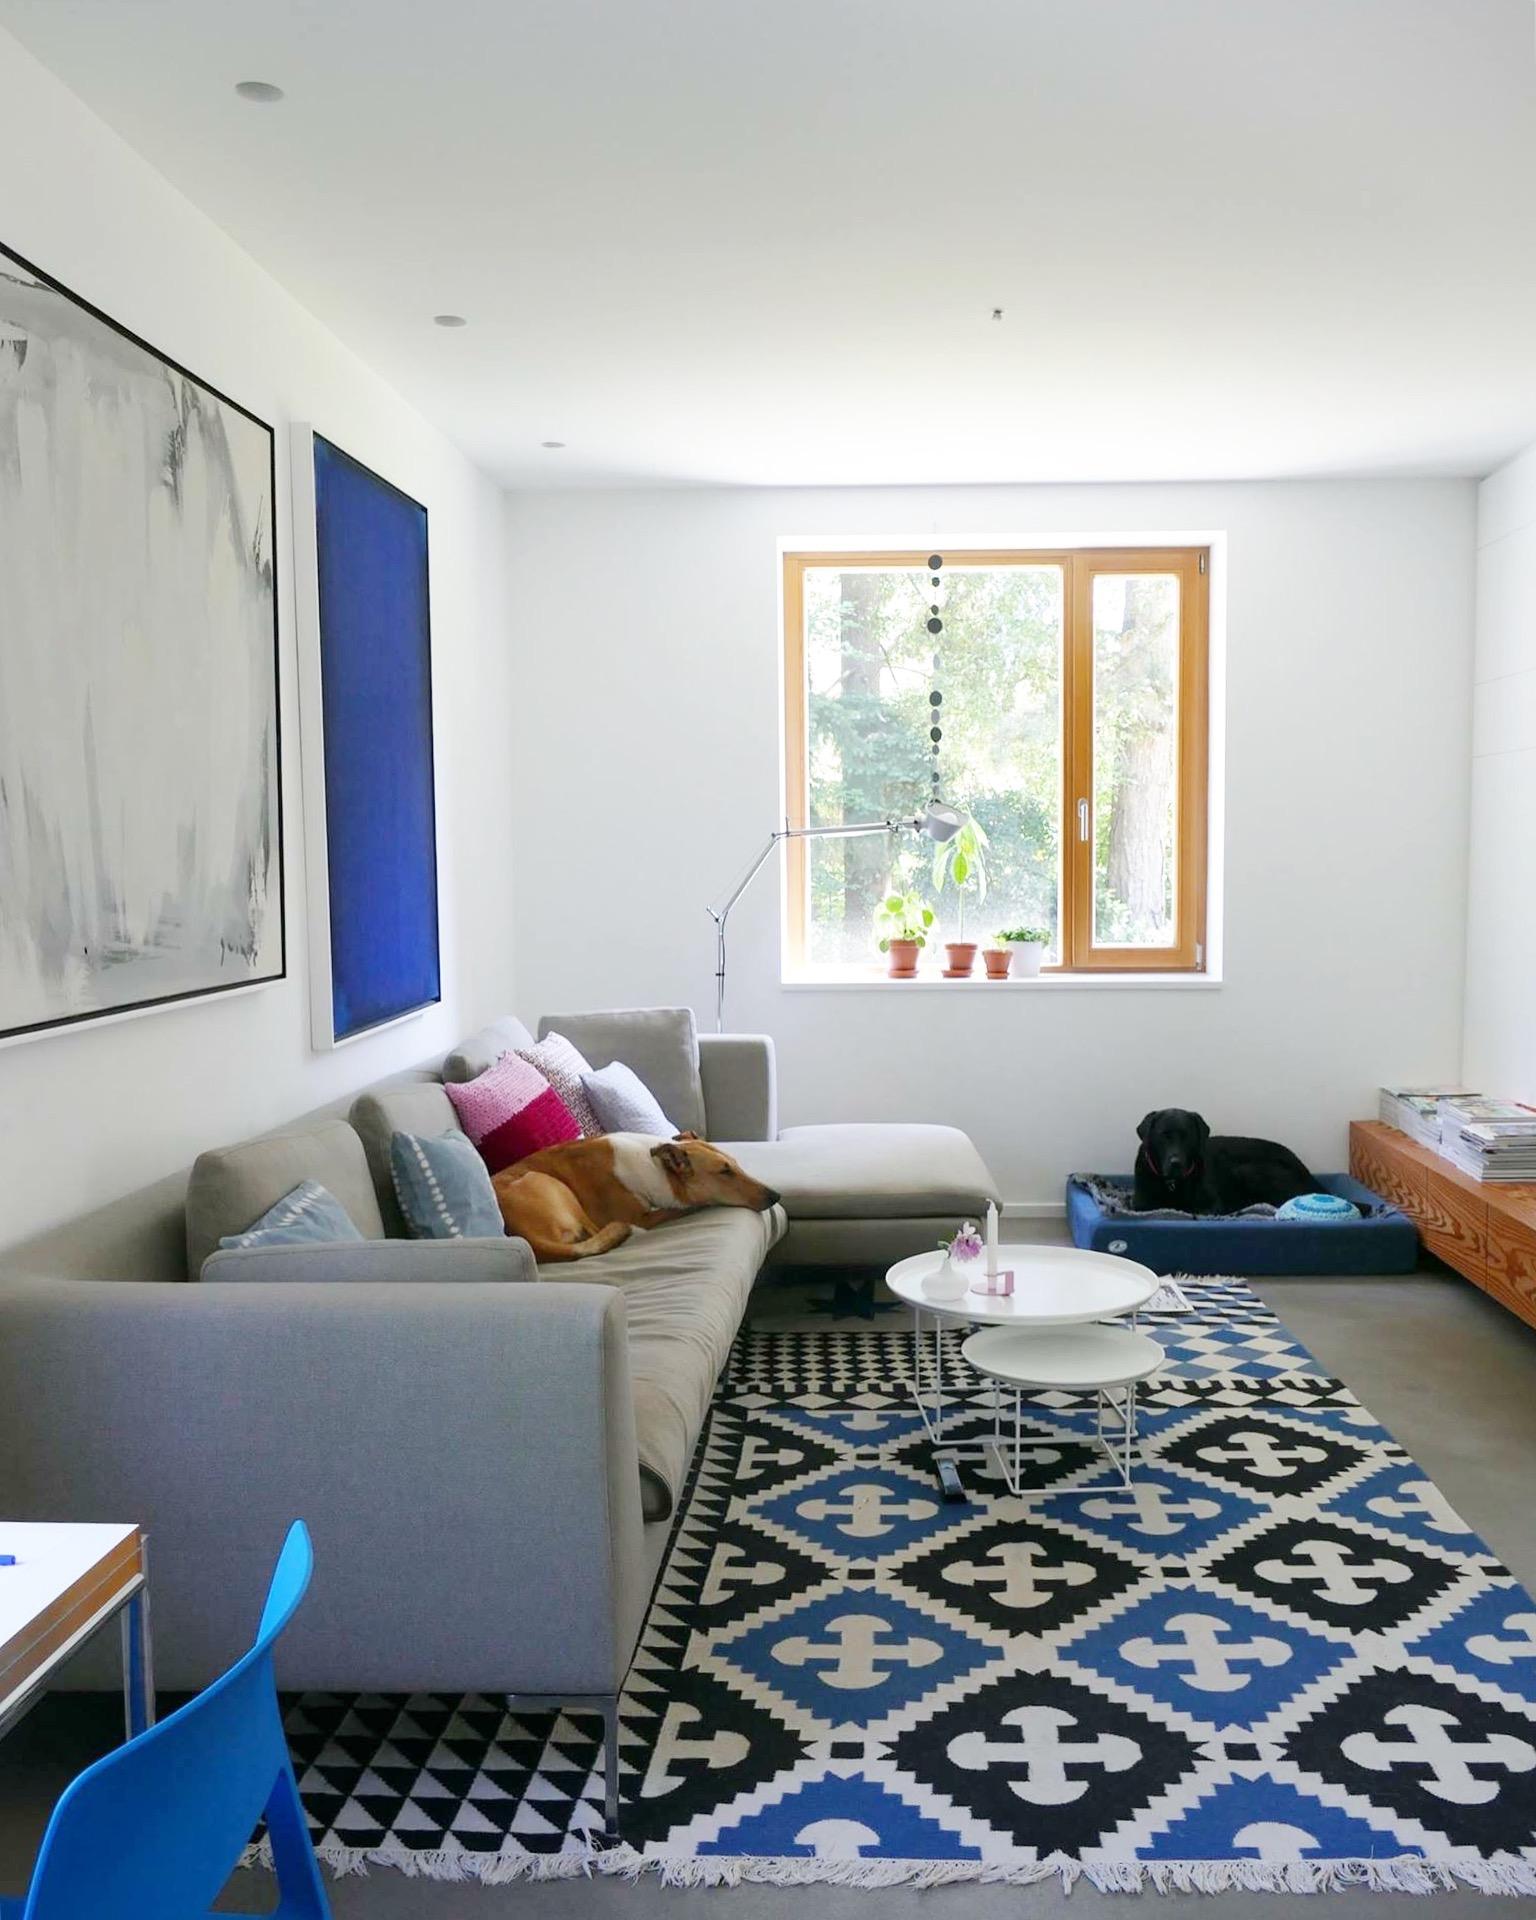 Nochmal ein pic von unseren Coucpotatoes #hunde#wohnzimmer#blau#cozy